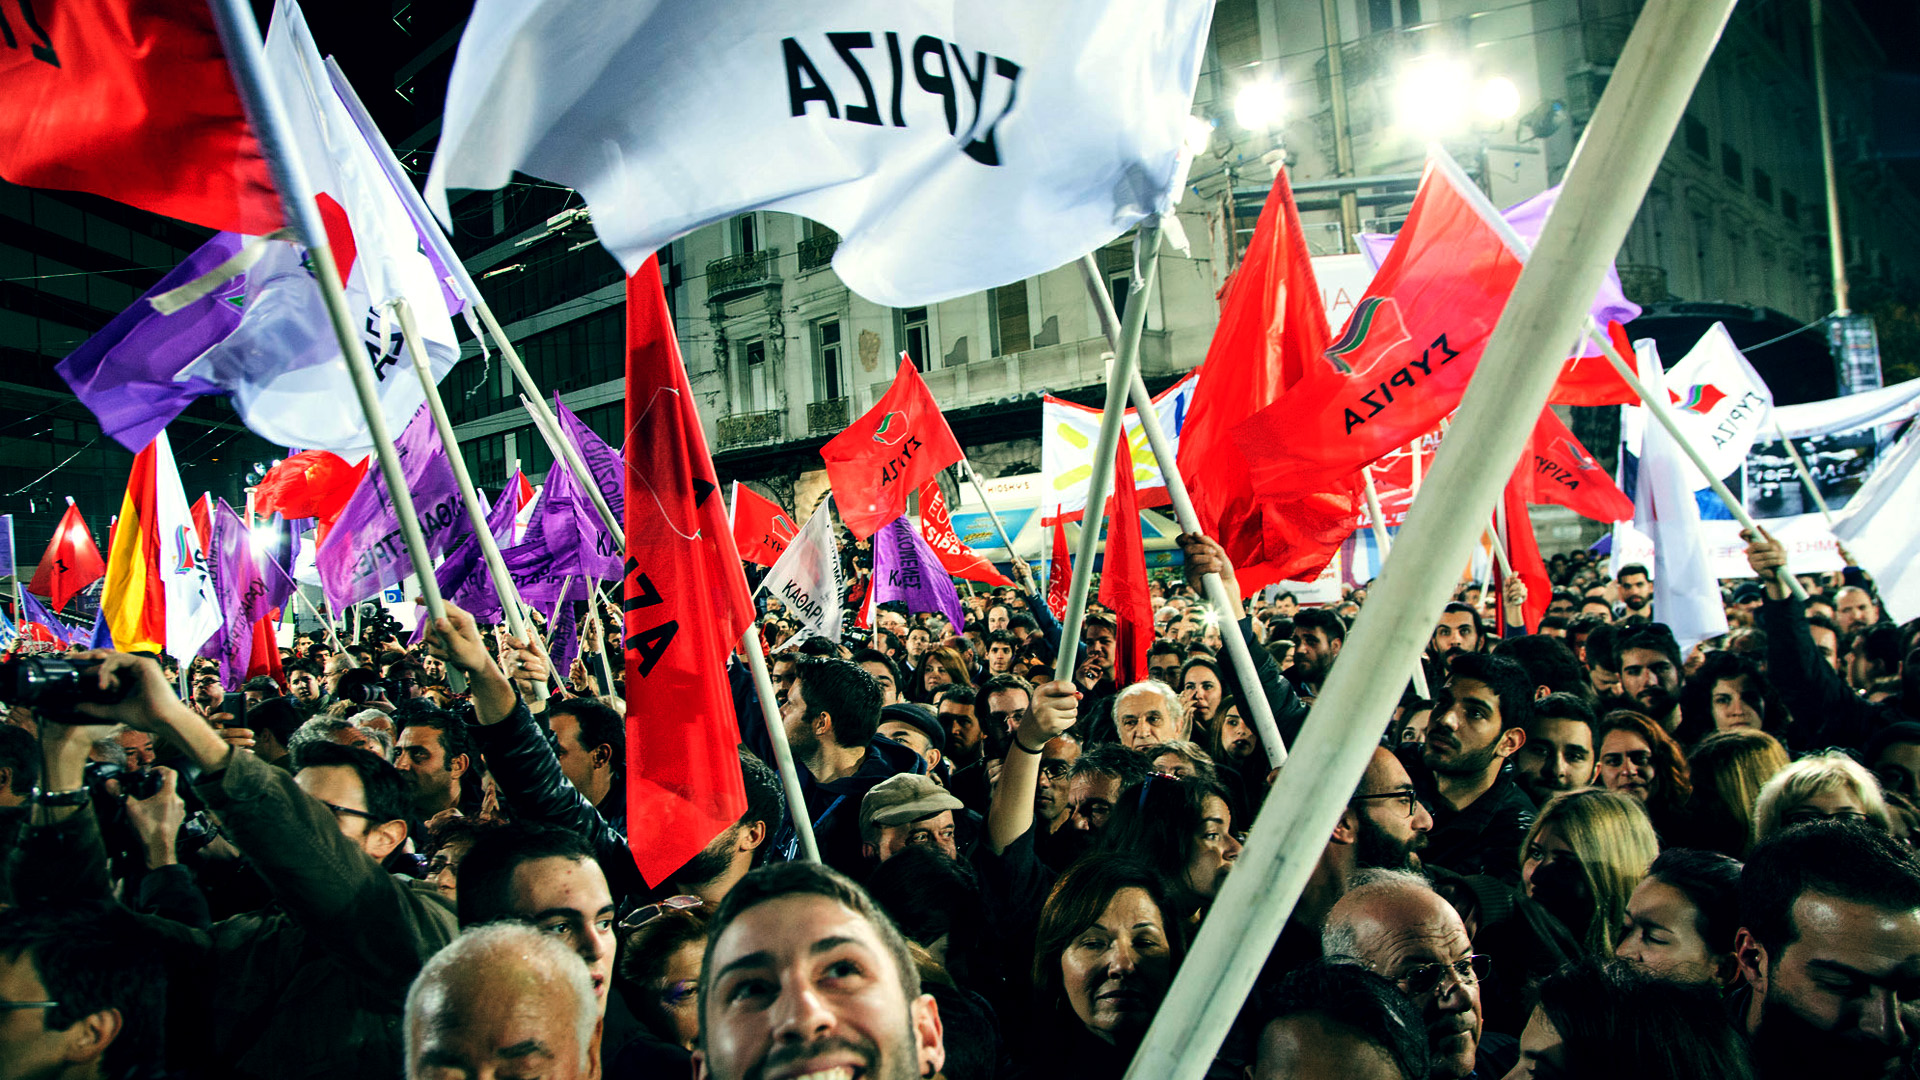 Cosa significherebbe per i movimenti una vittoria di SYRIZA?